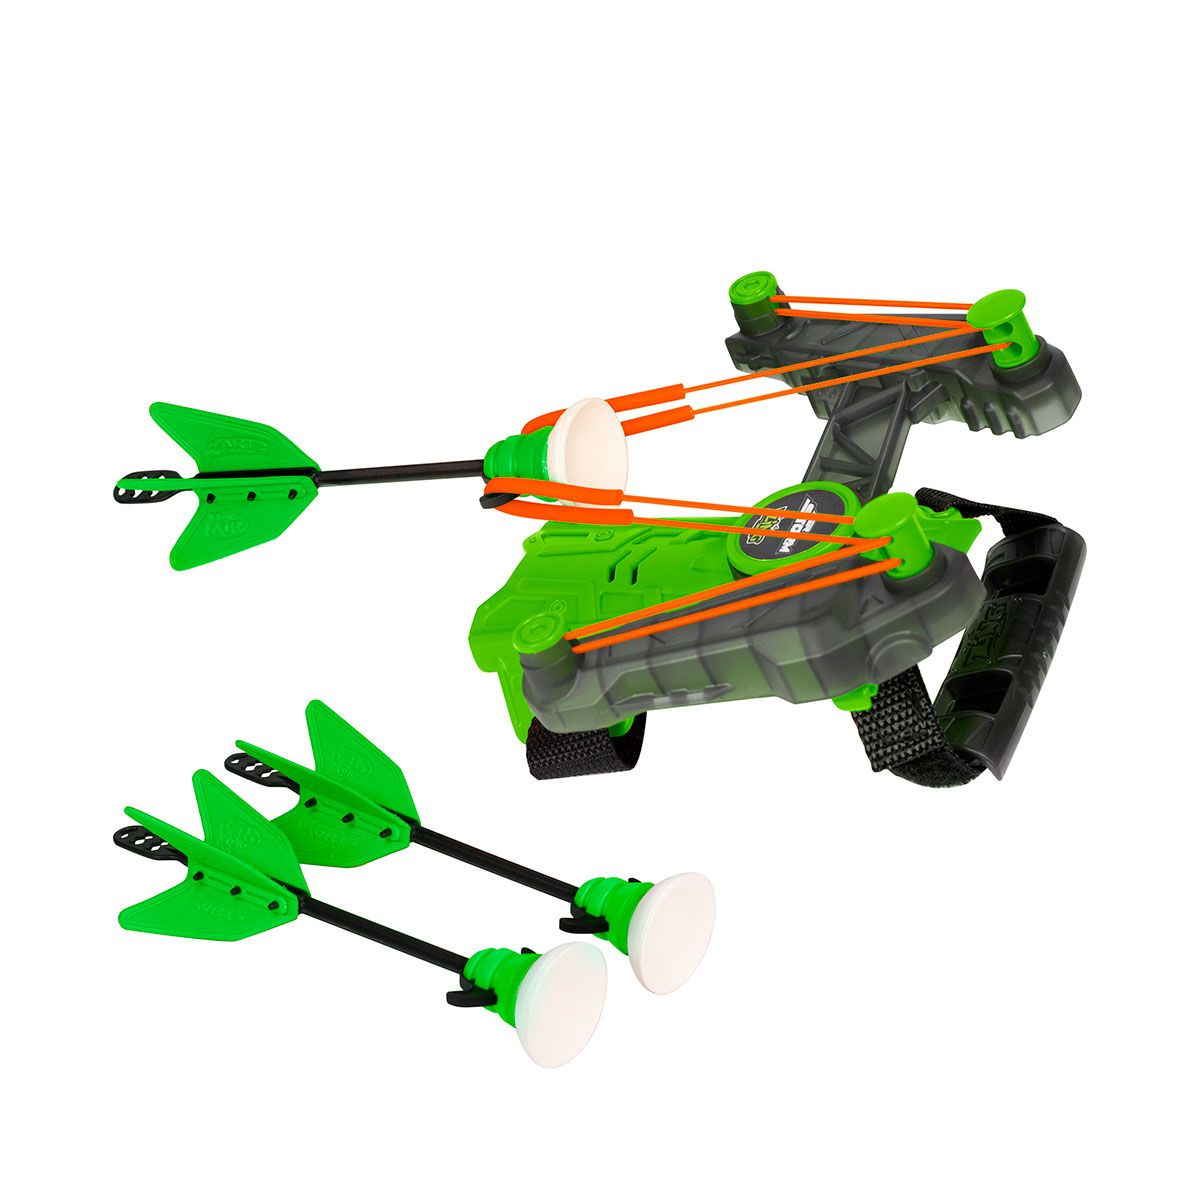 Іграшковий лук на запʼясток Air Storm - Wrist bow (зелений)